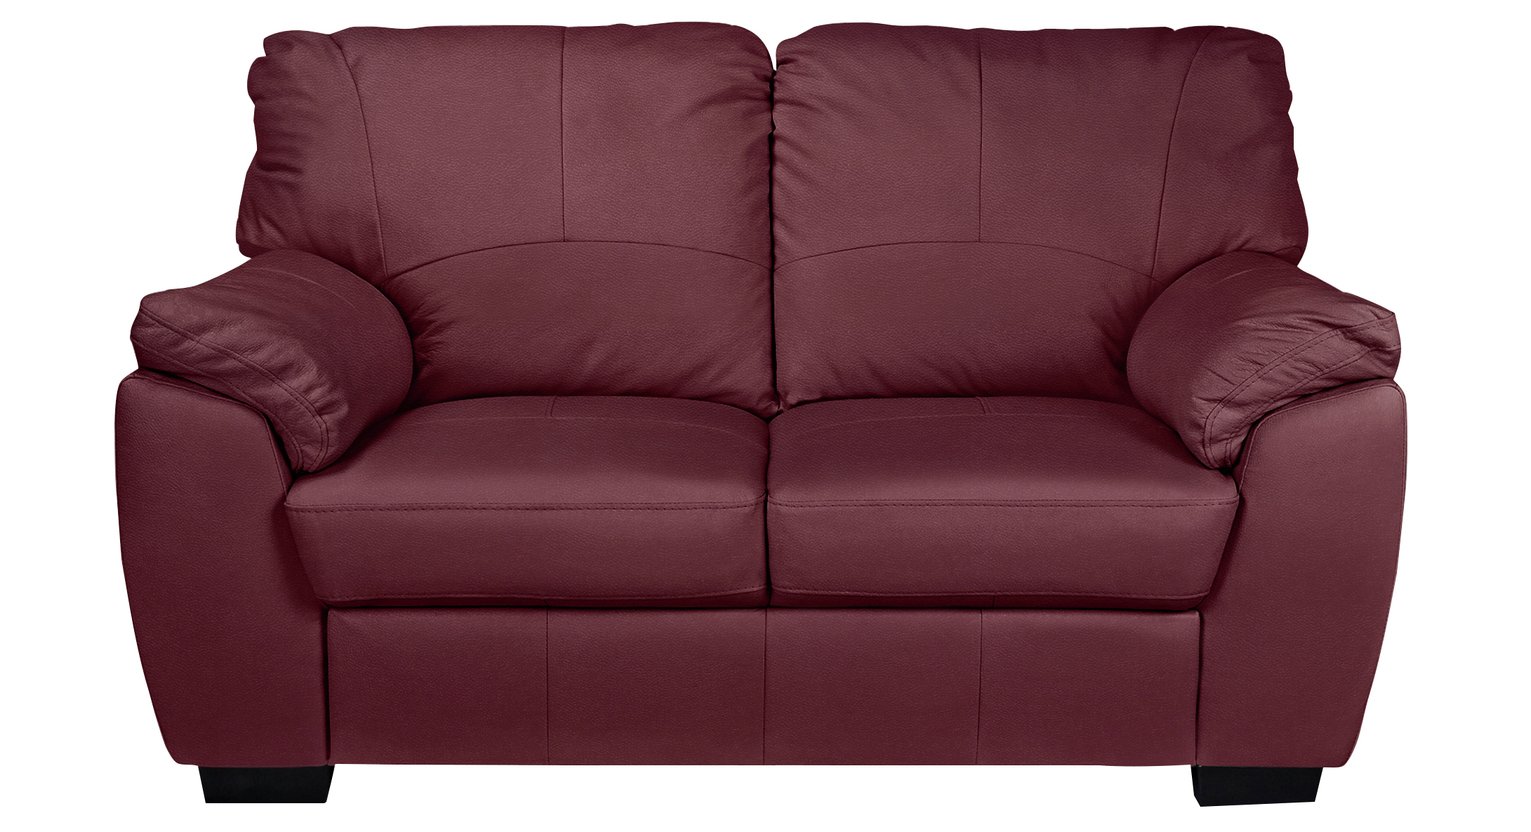 Argos Home Milano Leather 2 Seater Sofa - Burgundy